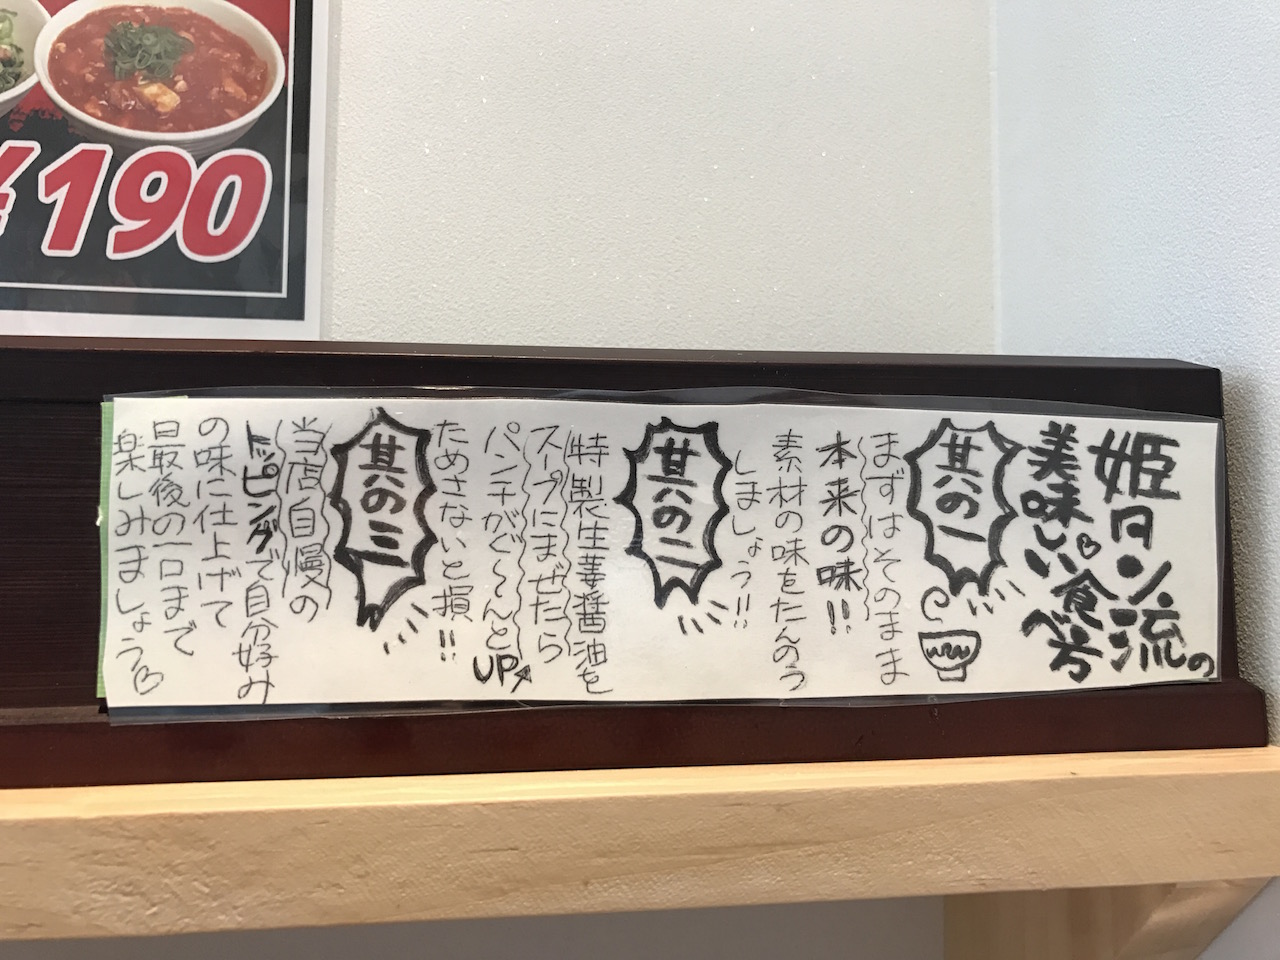 しょうが醤油でいただく「姫路タンメン」で肉タンメンを頼んだらエライことになった